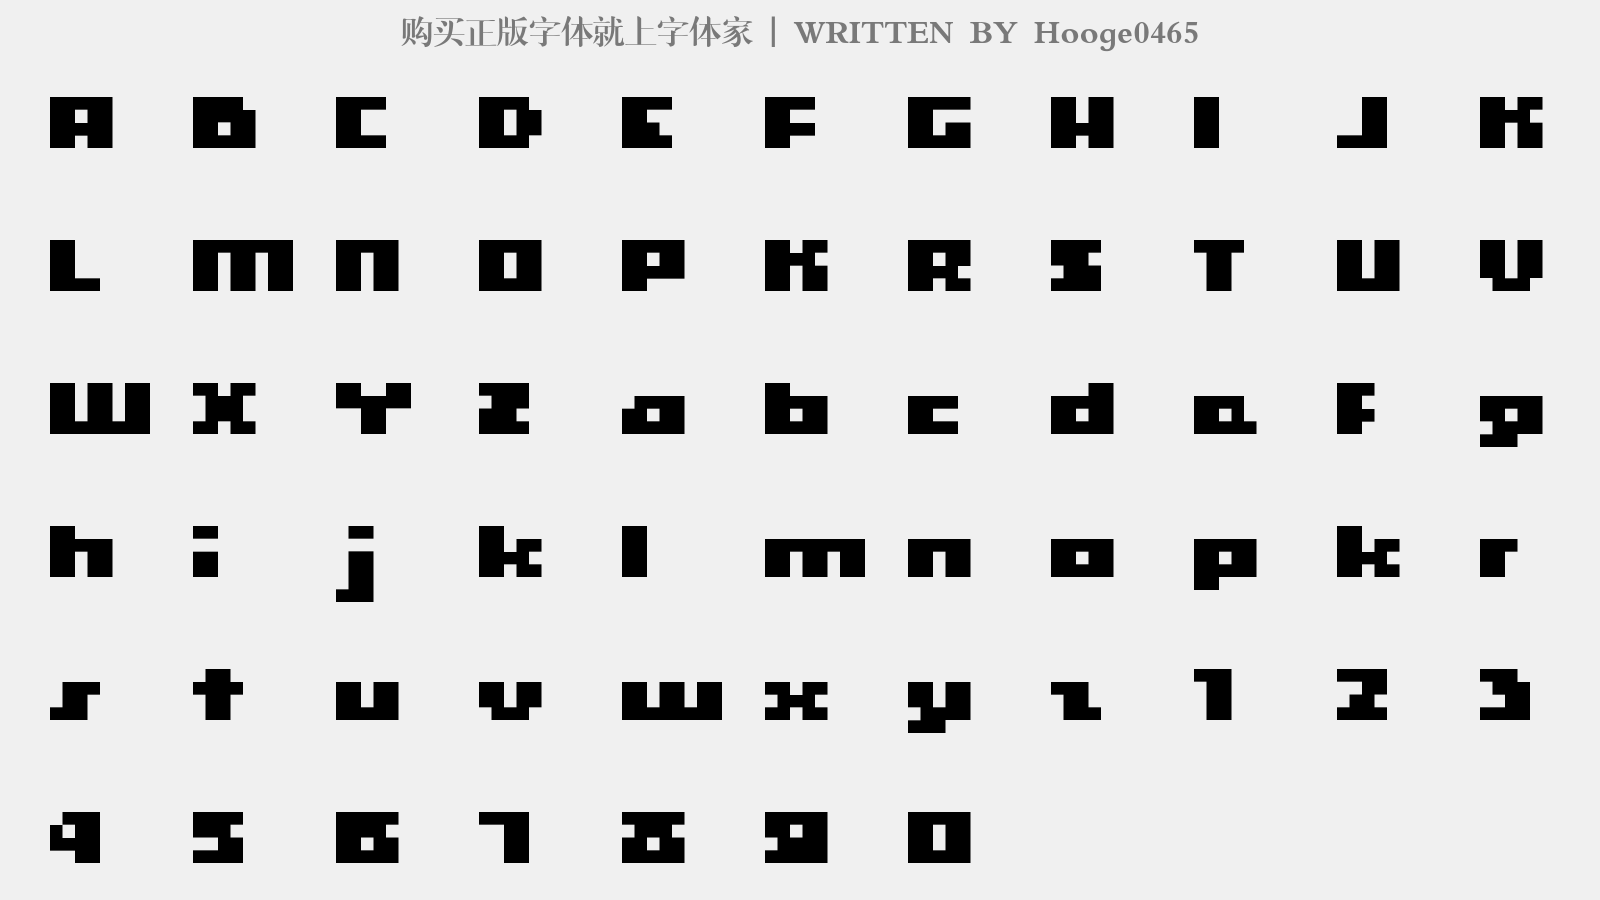 Hooge0465 - 大写字母/小写字母/数字